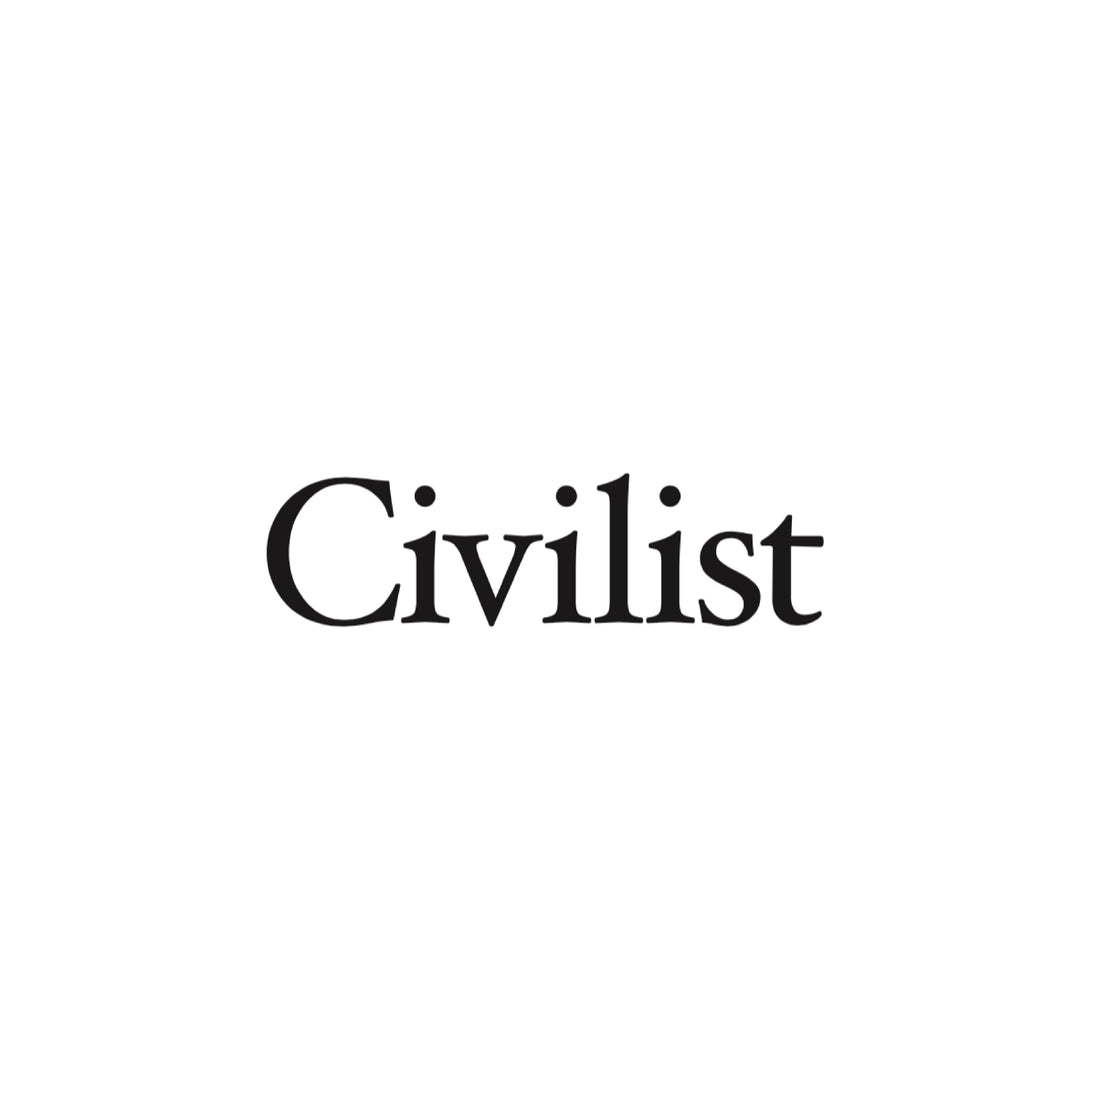  Civilist